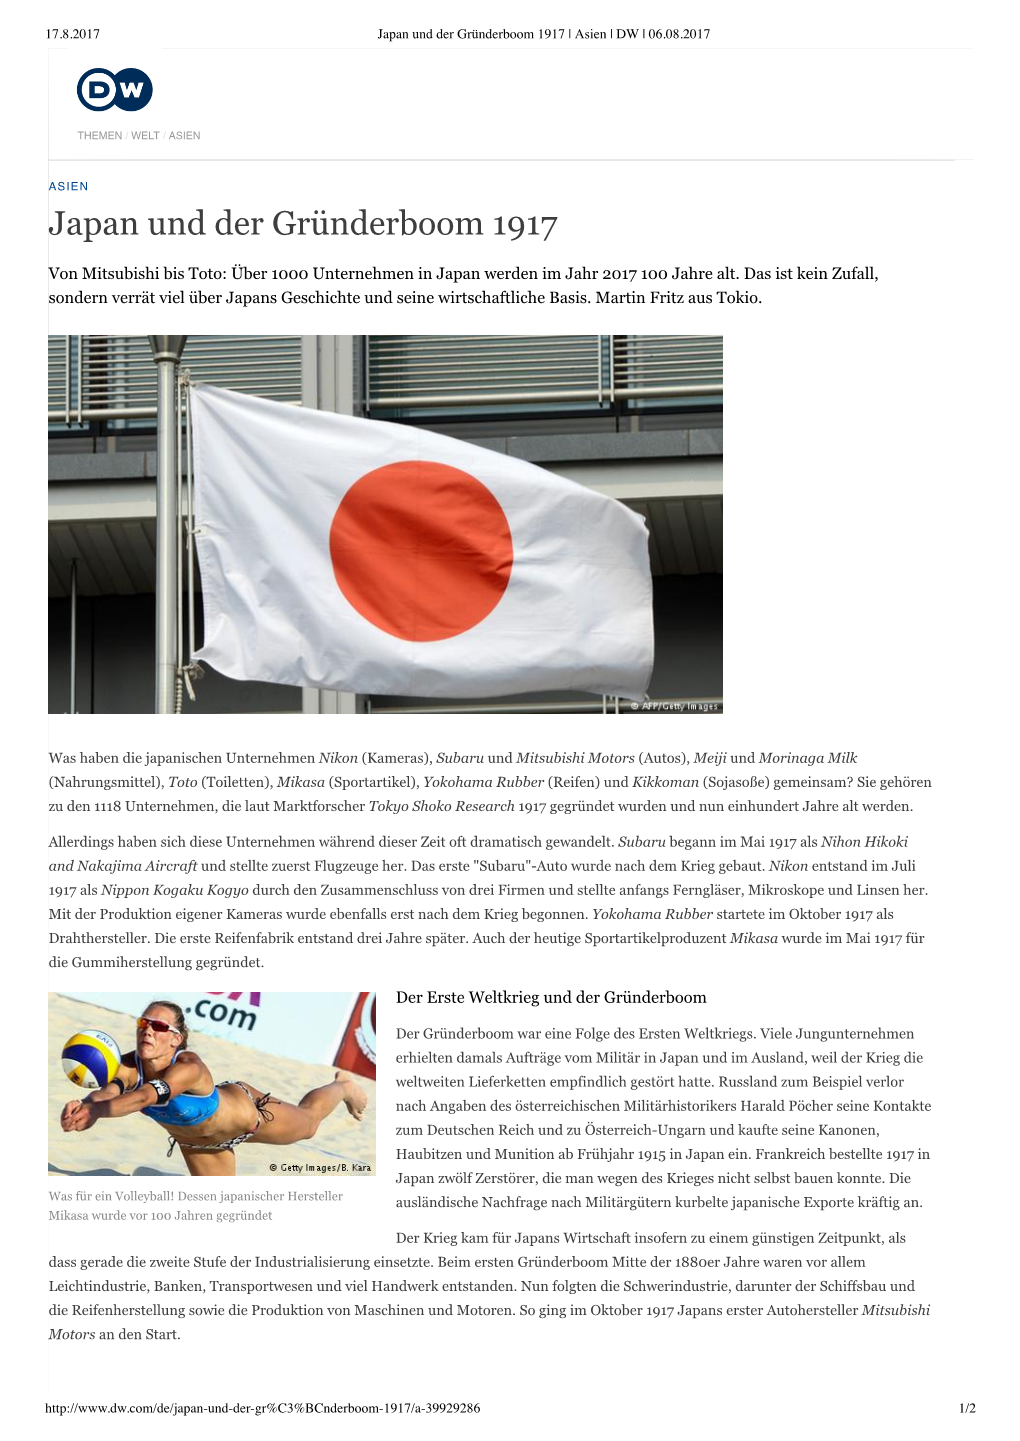 Japan Und Der Gründerboom 1917 | Asien | DW | 06.08.2017